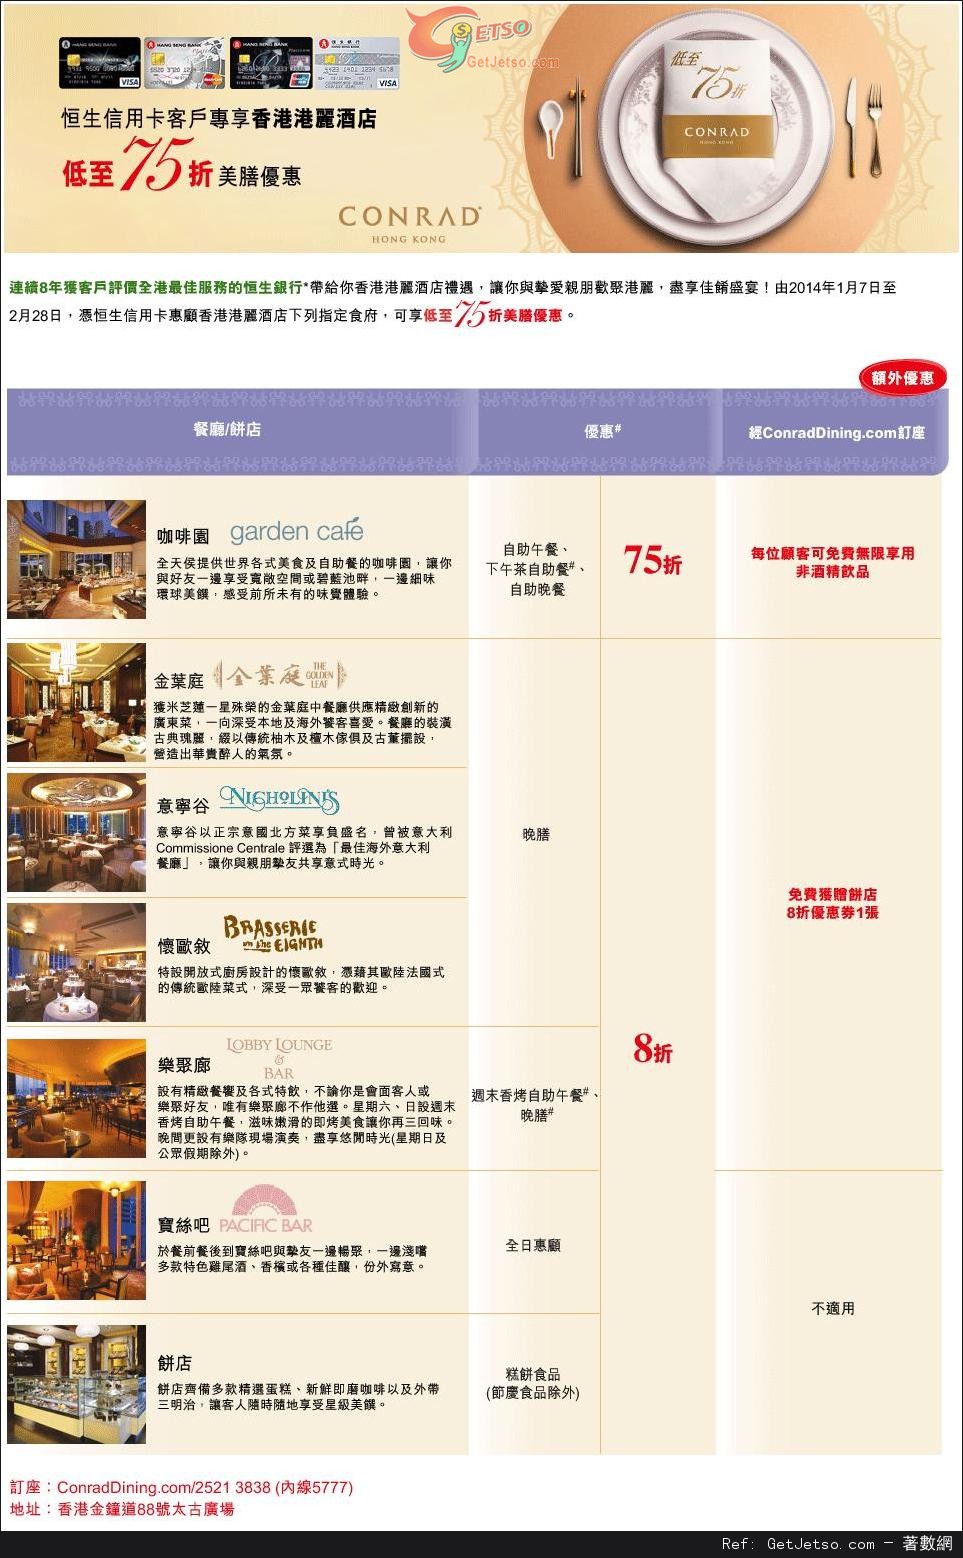 恒生信用卡享香港港麗酒店美膳低至75折優惠(至14年2月28日)圖片1